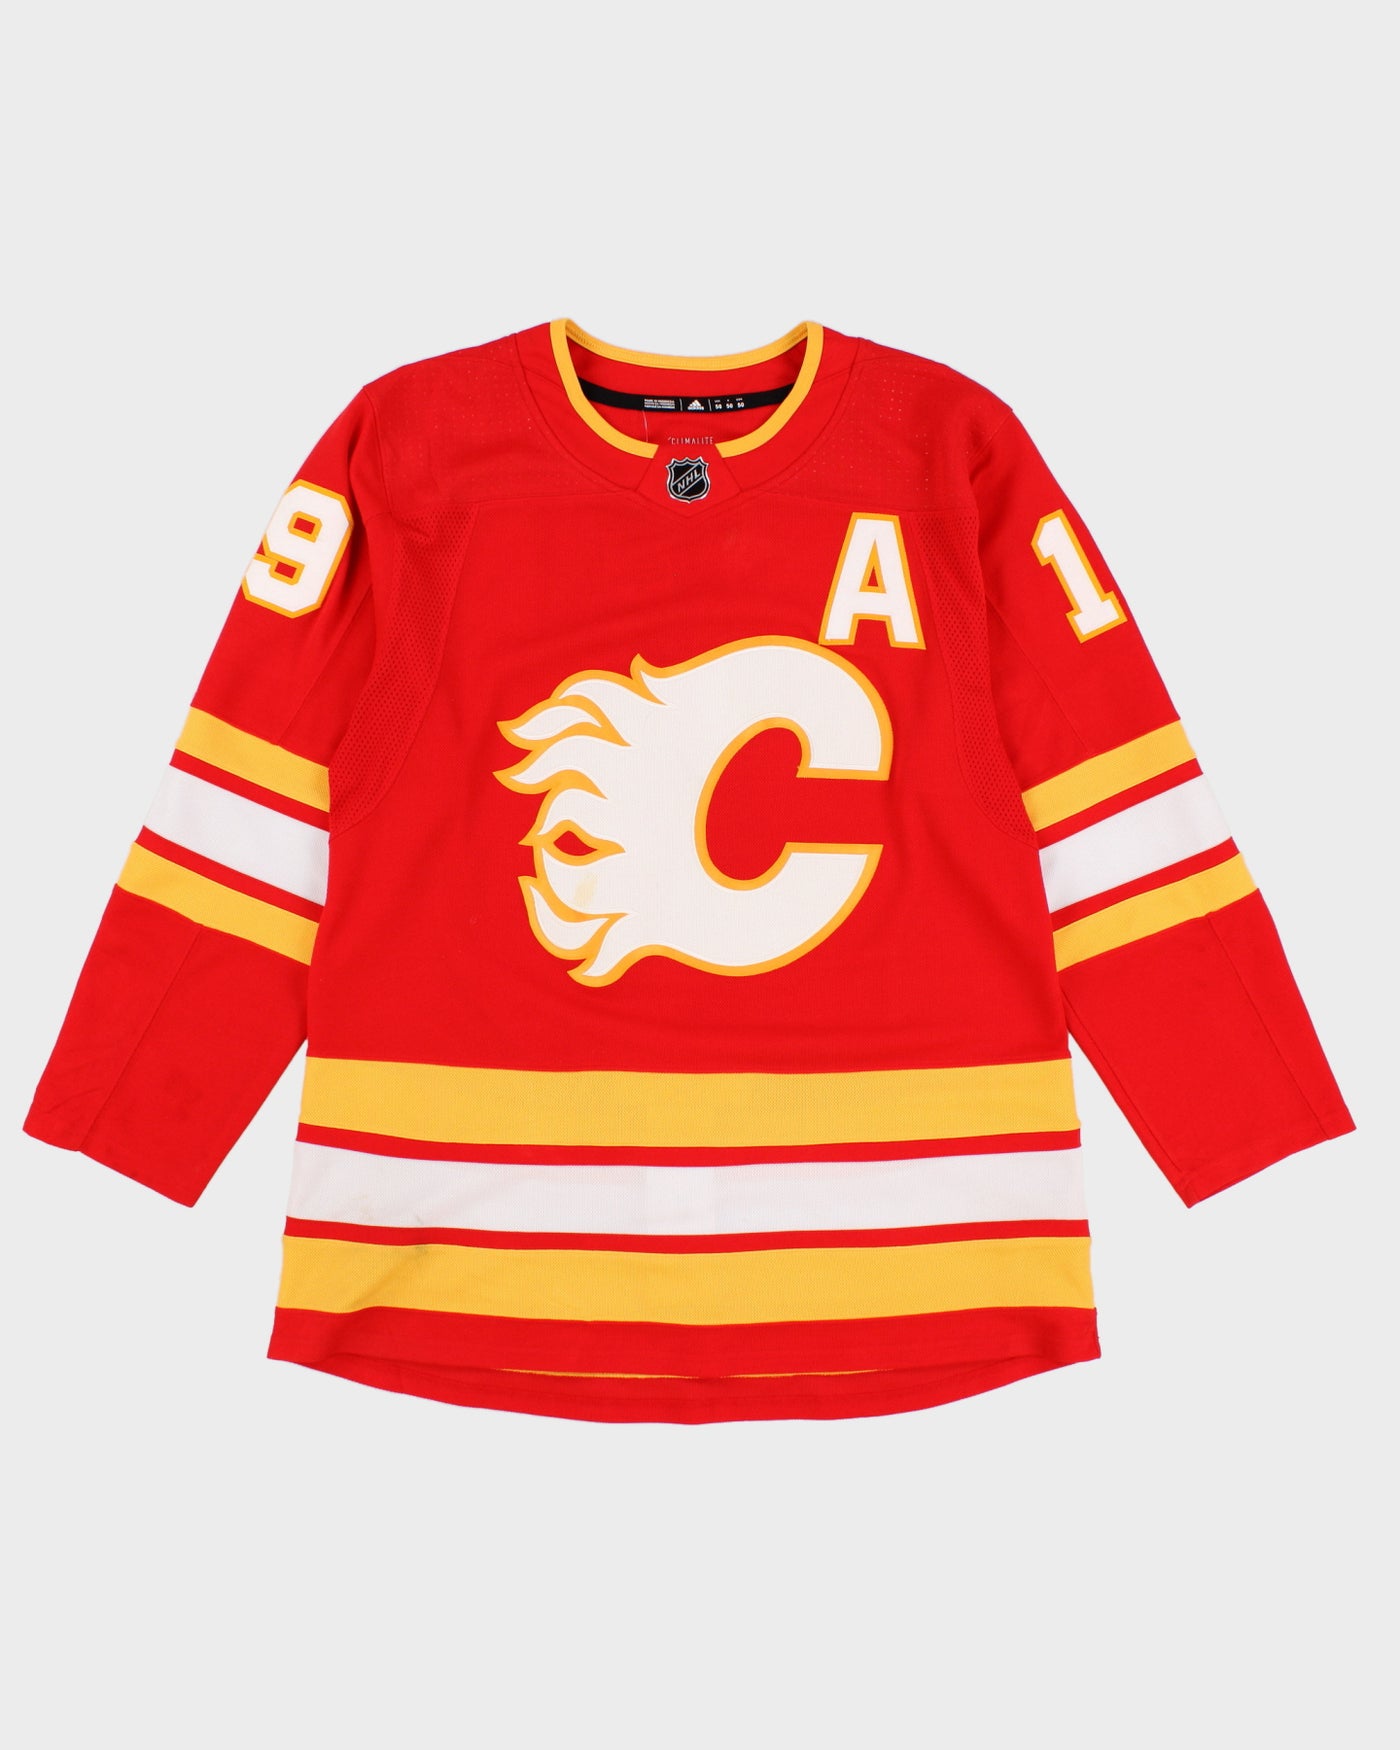 Adidas NHL x Calgary Flames Matthew Tkachuk #19 Hockey Jersey - M